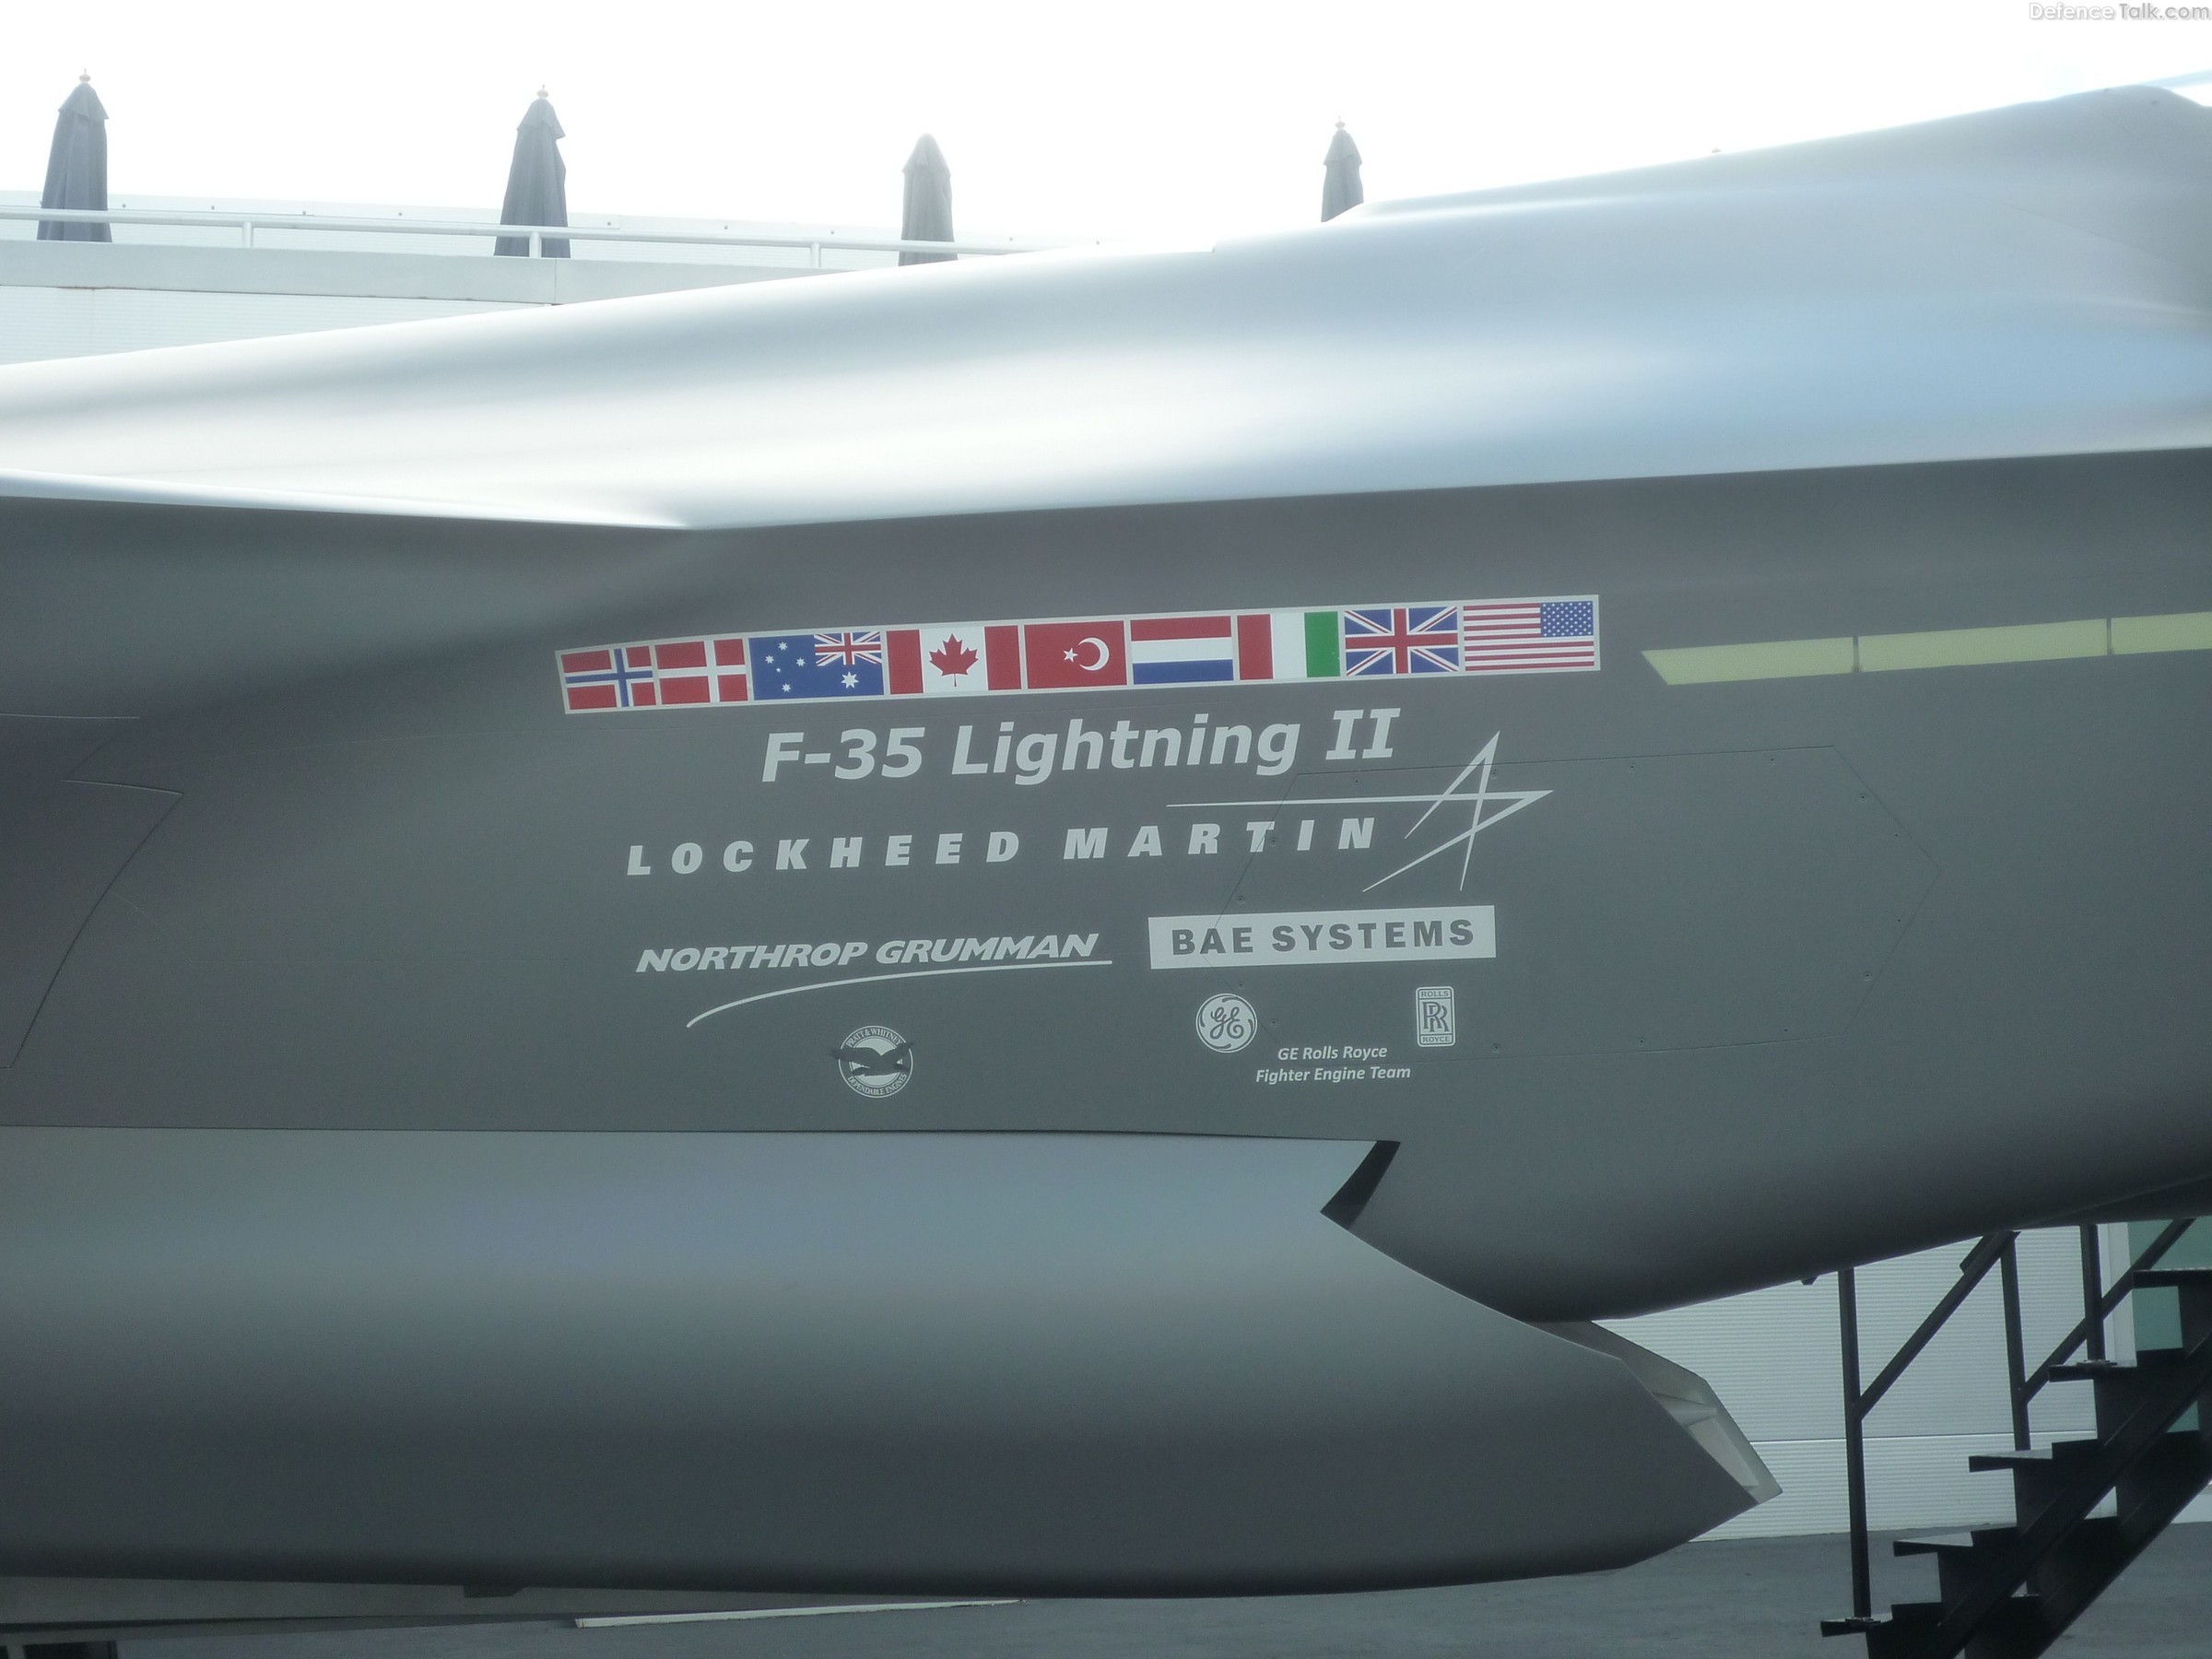 F-35 JSF at Farnborough 2010 Air Show